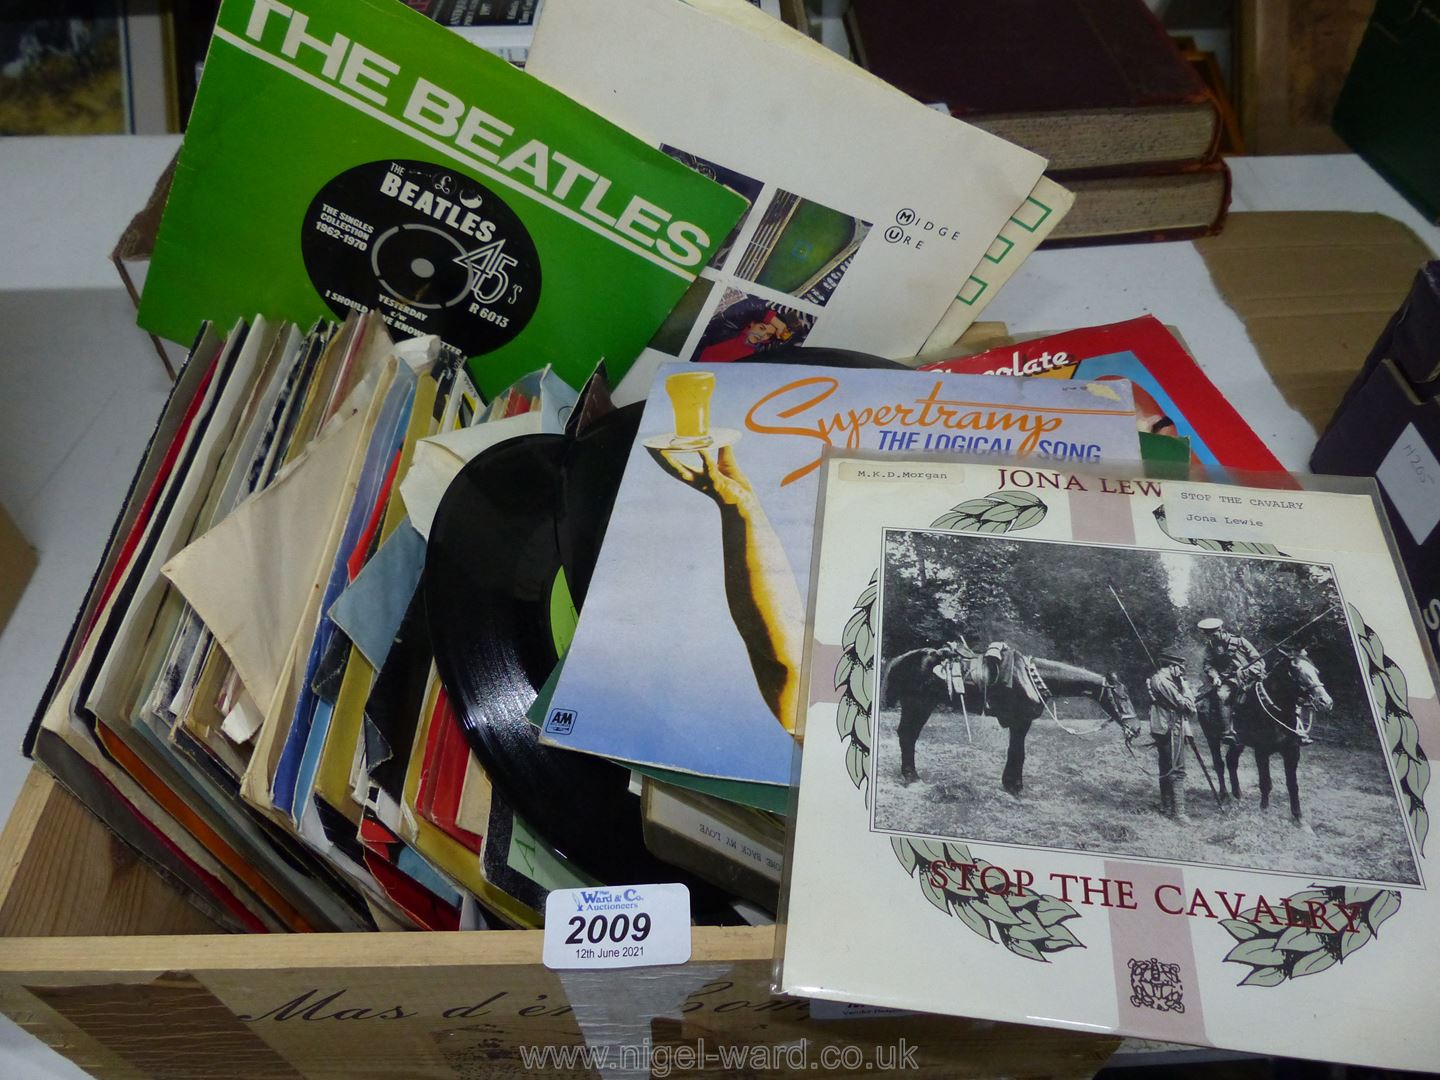 A quantity of 45 rpm records including Hot Chocolate, Gary Numan, Supertramp, etc.